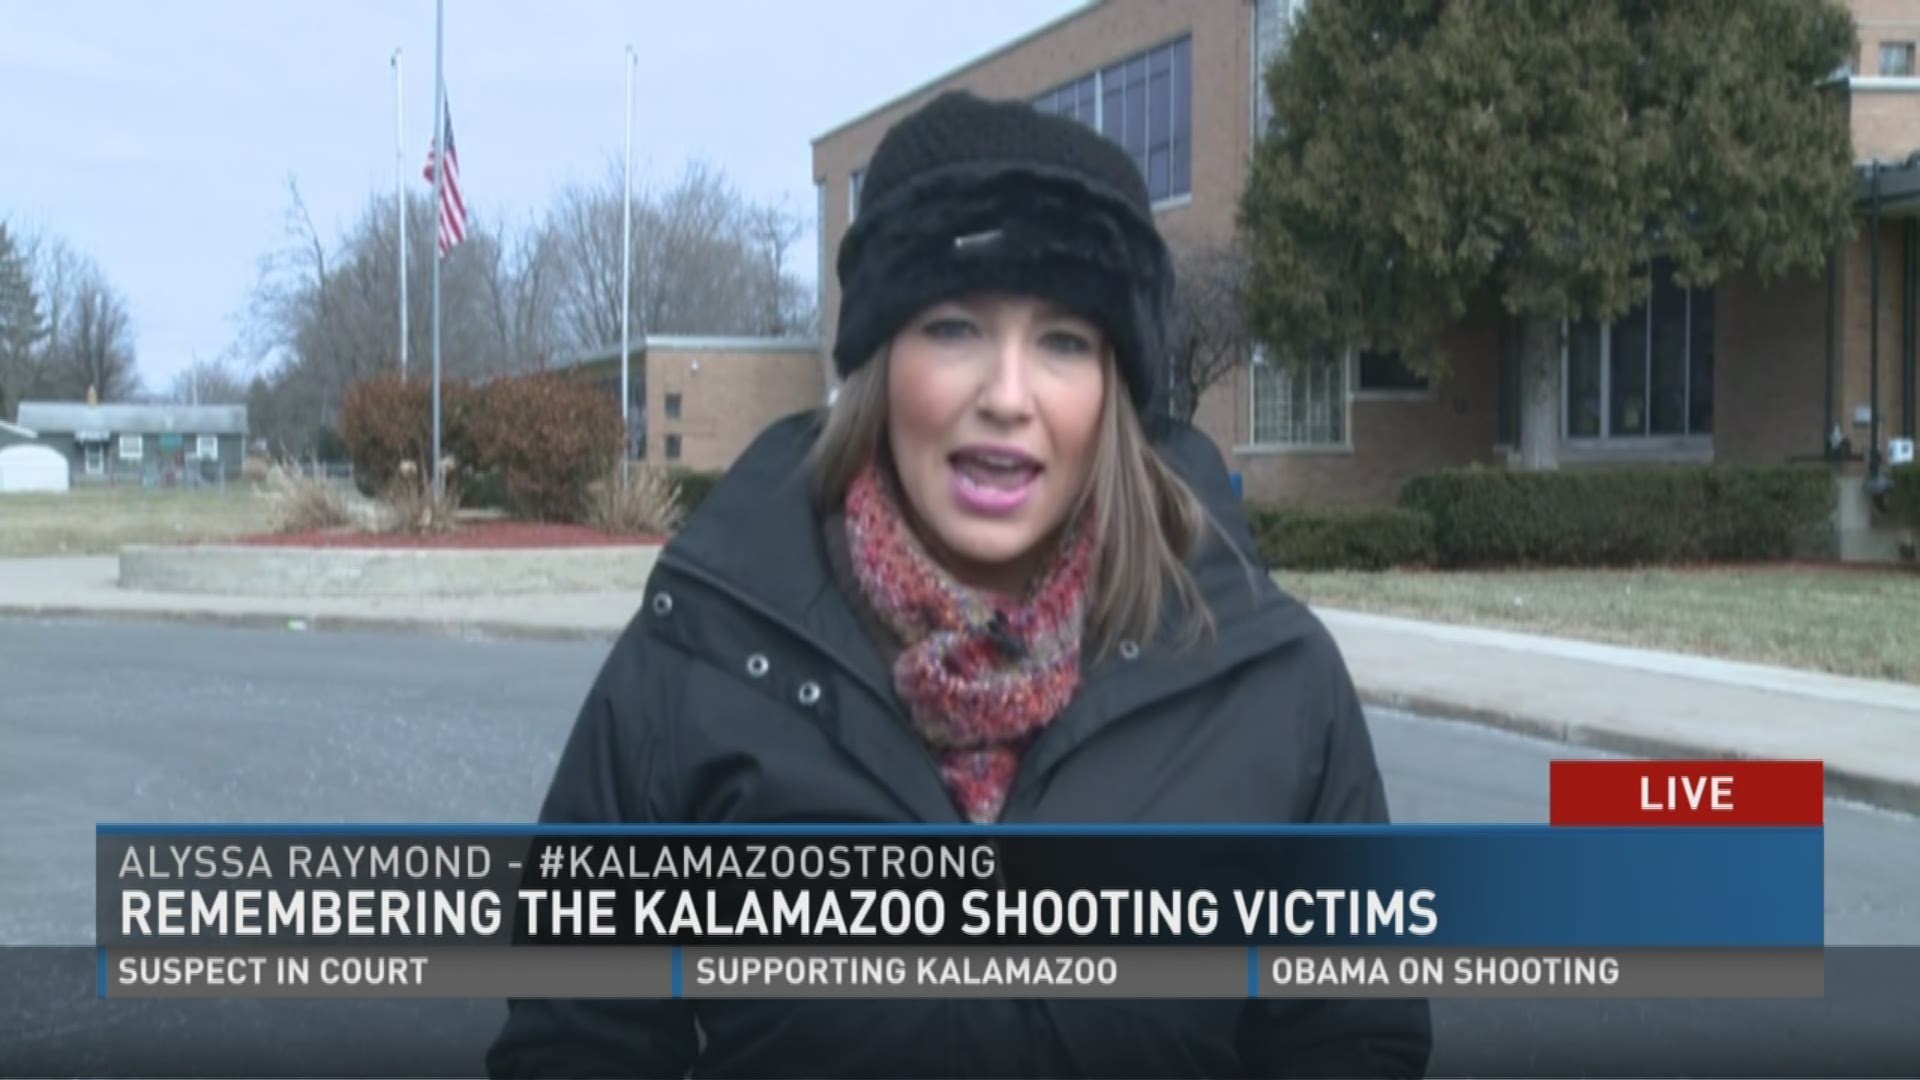 Remembering the Kalamazoo shooting victims